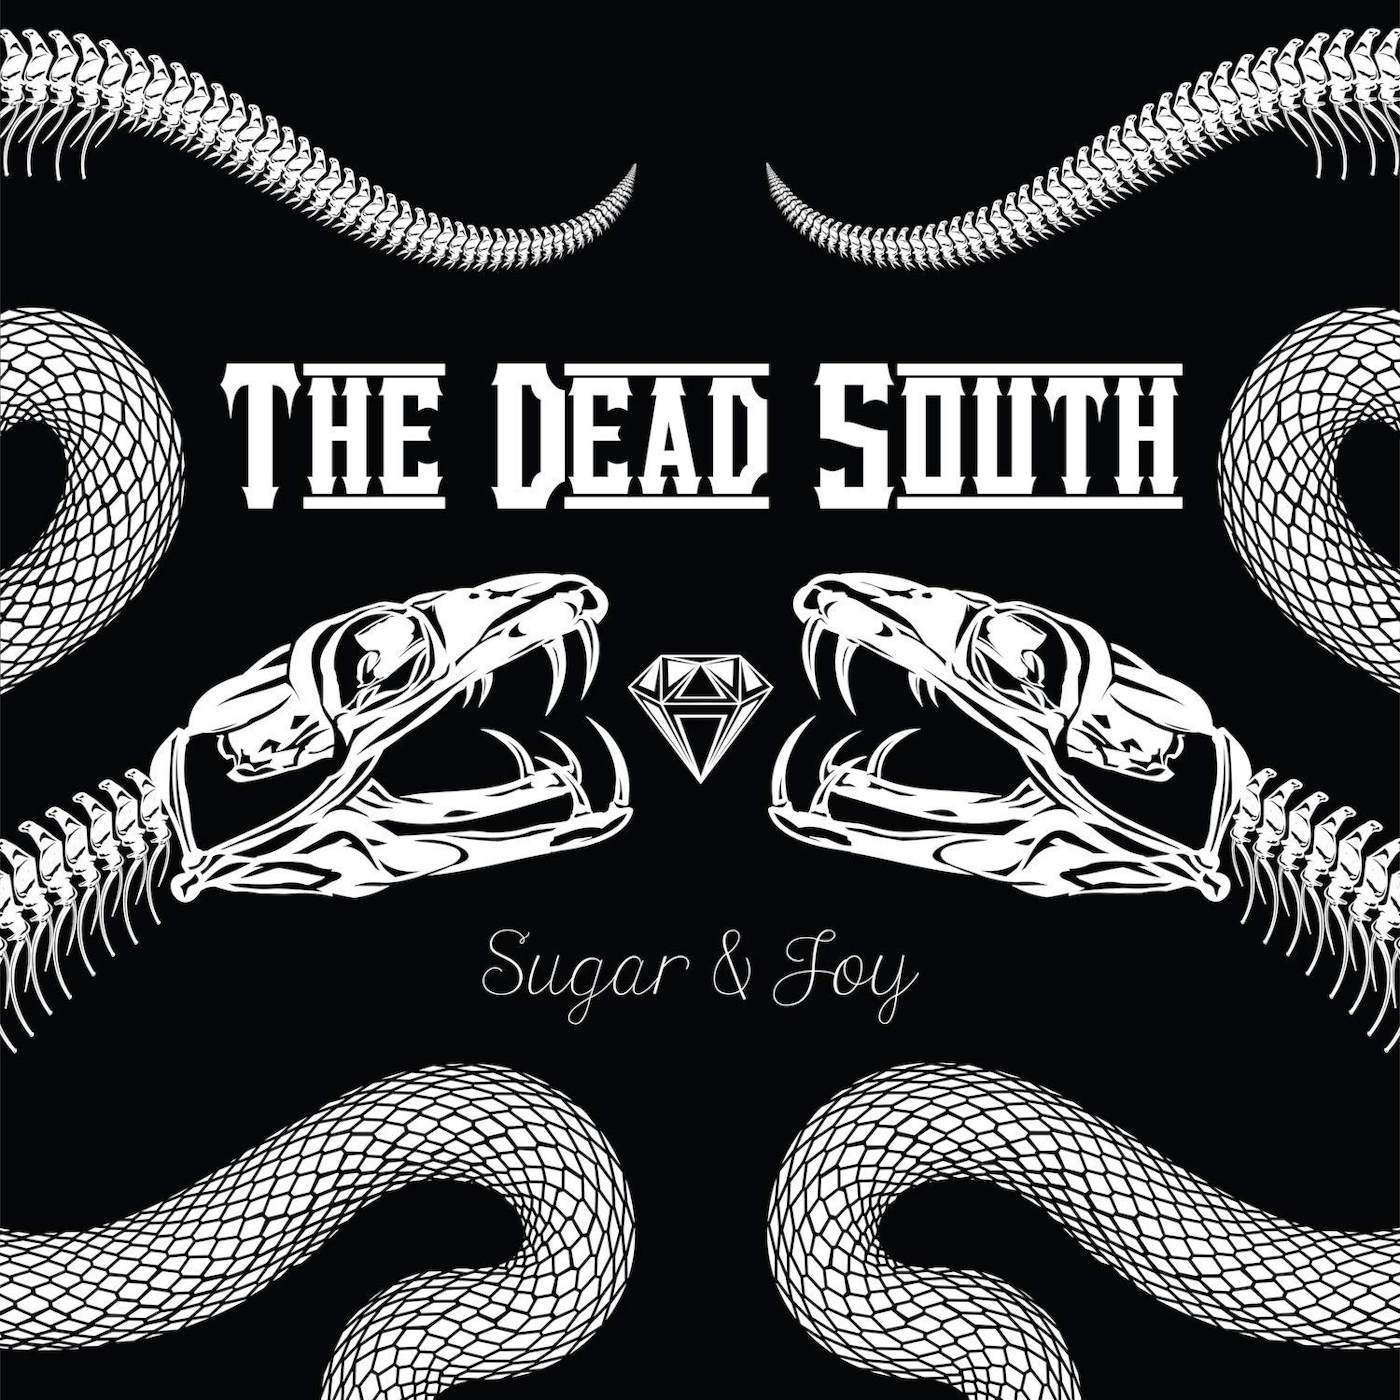 The Dead South Sugar & Joy Vinyl Record